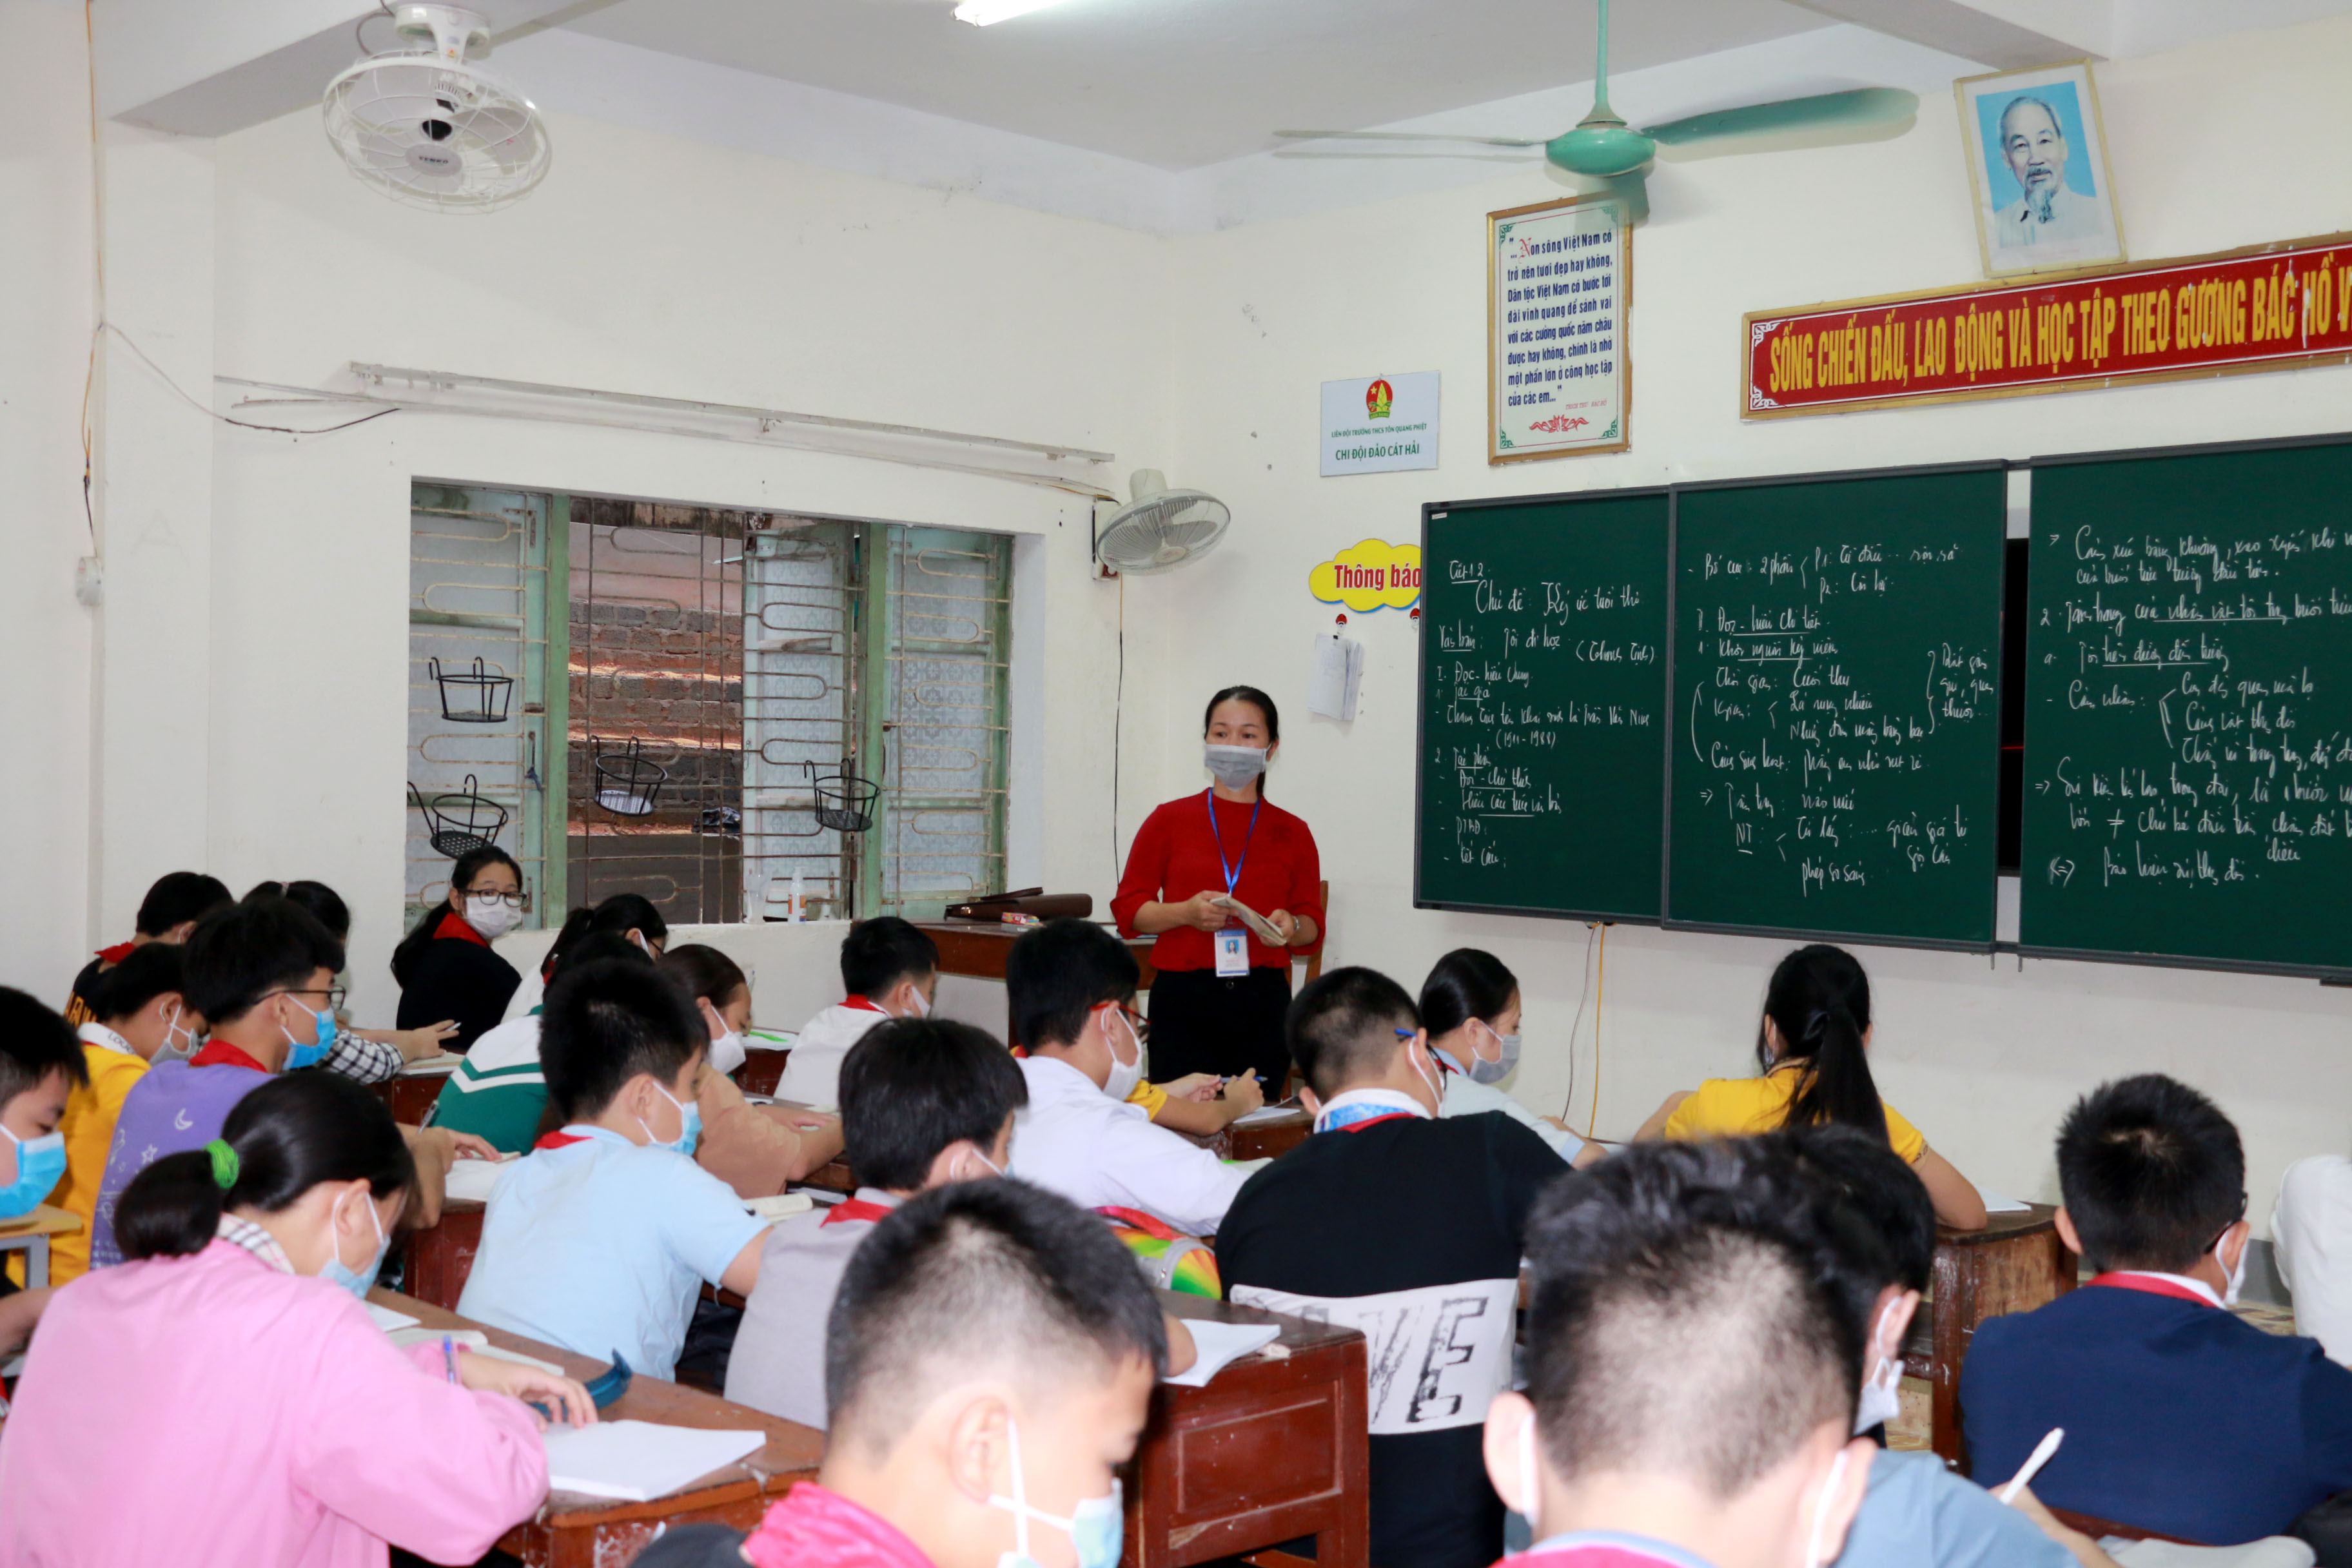 Thời điểm này, Thanh Chương là một trong những huyện đầu tiên triển khai đồng bộ dạy học trực tiếp ở cả ba cấp học. Với học sinh lớp 8 - Trường THCS Tôn Quang Phiệt, bài học đầu tiên sau kỳ nghỉ hè đó là tác phảm 